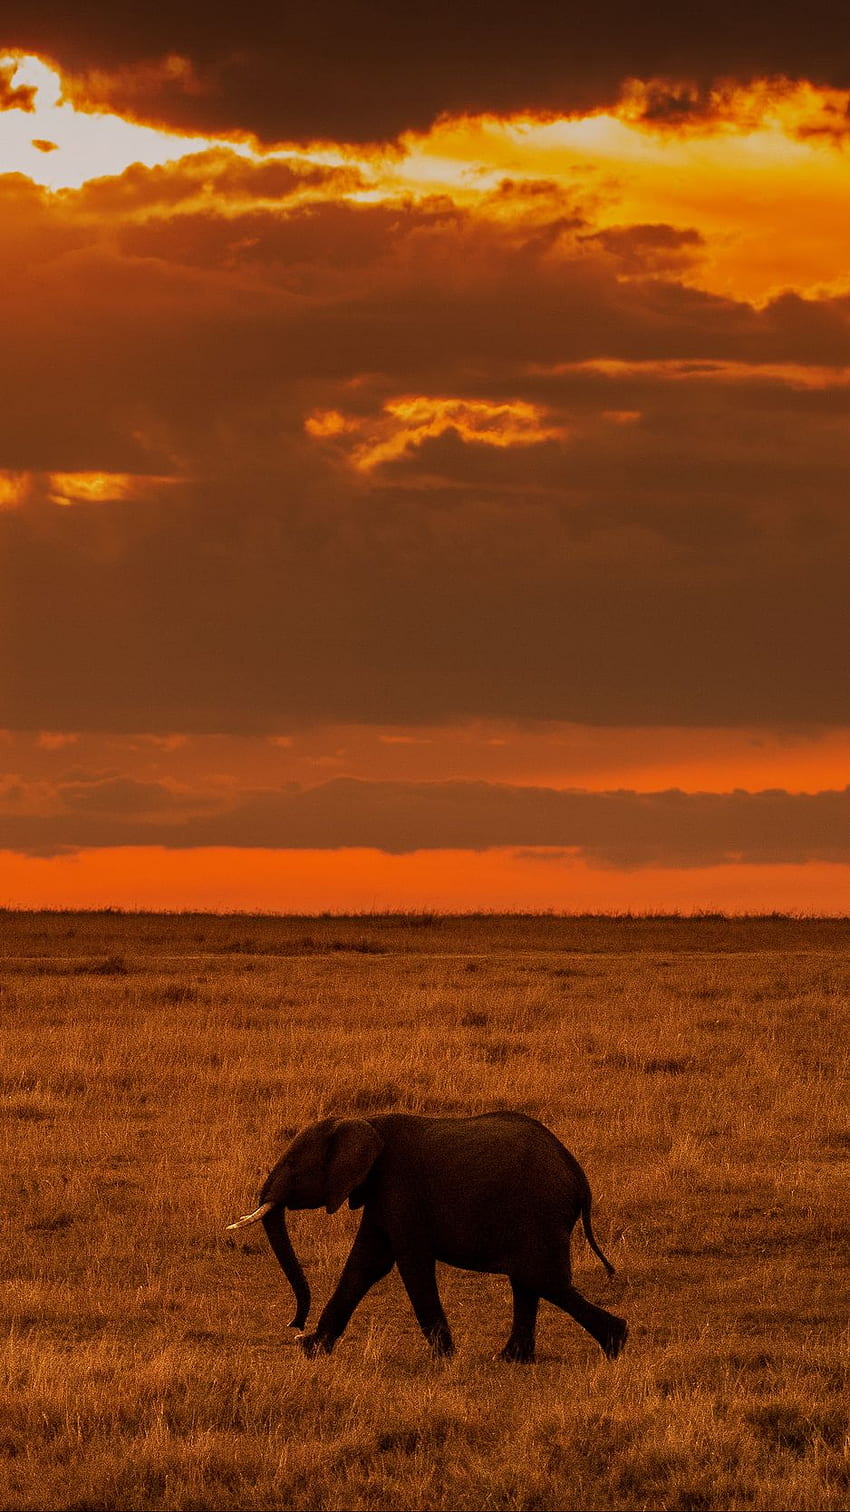 Lắng nghe tiếng voi thét lên trên đồng cỏ trong hoàng hôn, ngắm nhìn màu sắc hoàn mỹ của thiên nhiên châu Phi qua hình ảnh đầy nghệ thuật, chắc chắn sẽ là một trải nghiệm tuyệt vời.